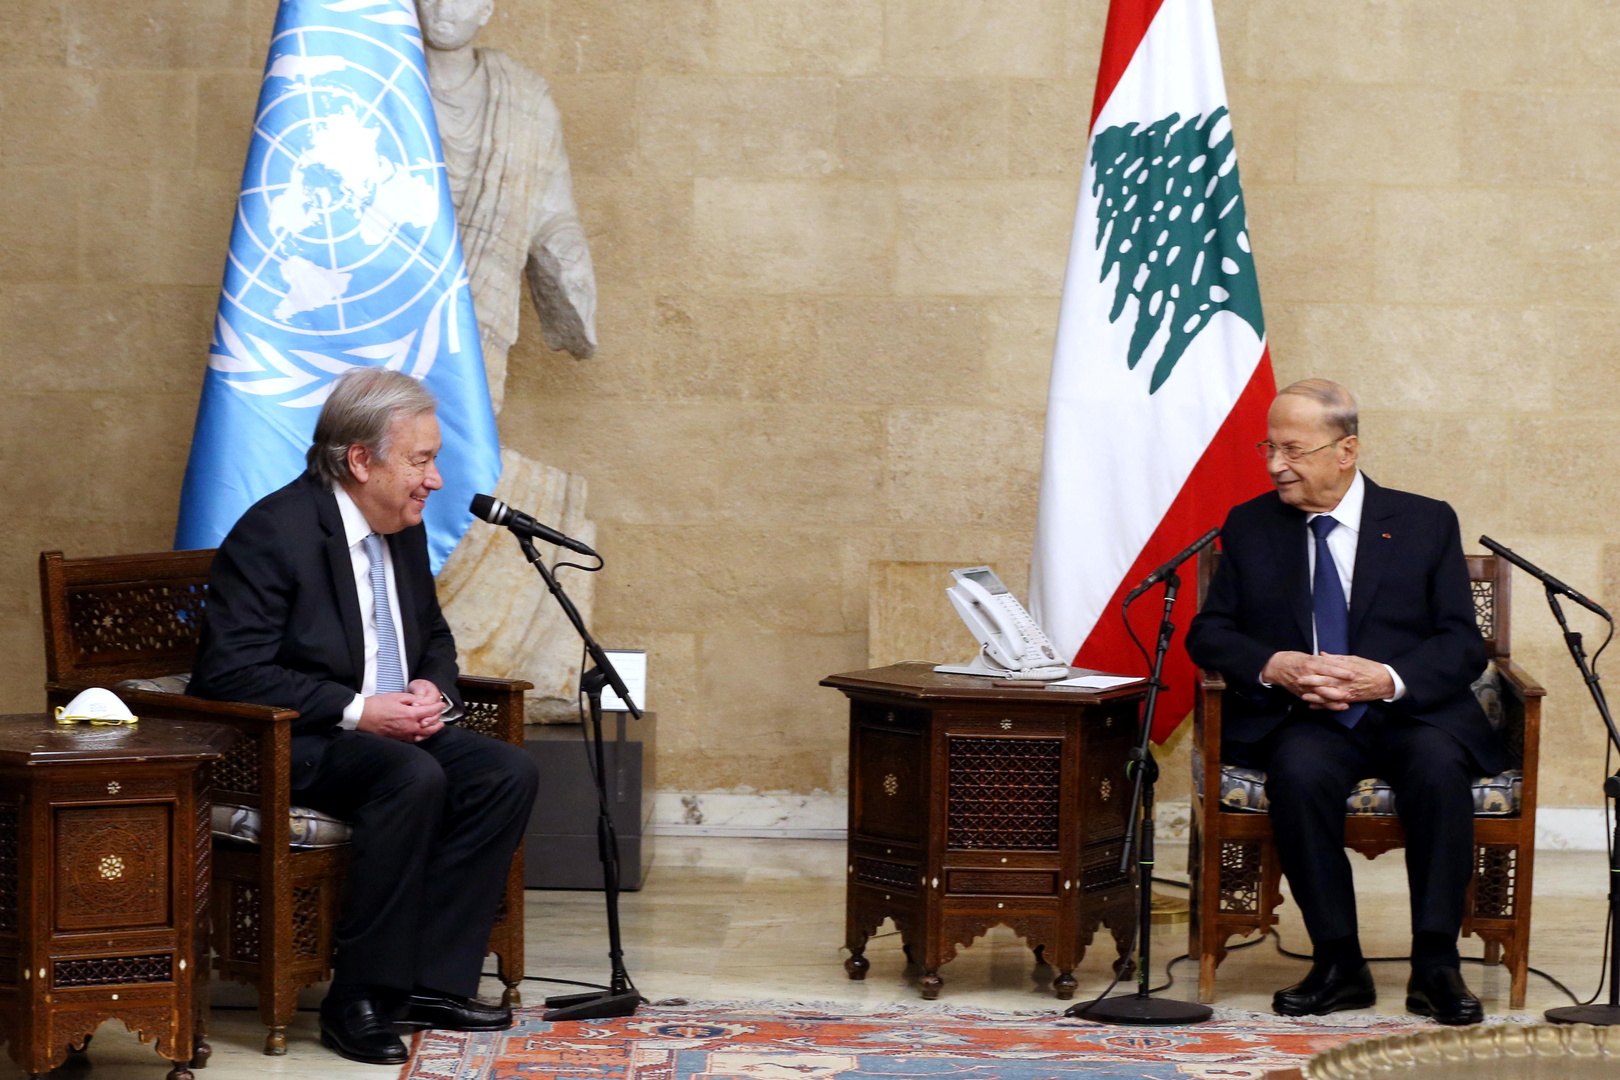 غوتيريش: الهدف من زيارتي للبنان مناقشة تقديم أفضل دعم للشعب للتغلب على أزماته